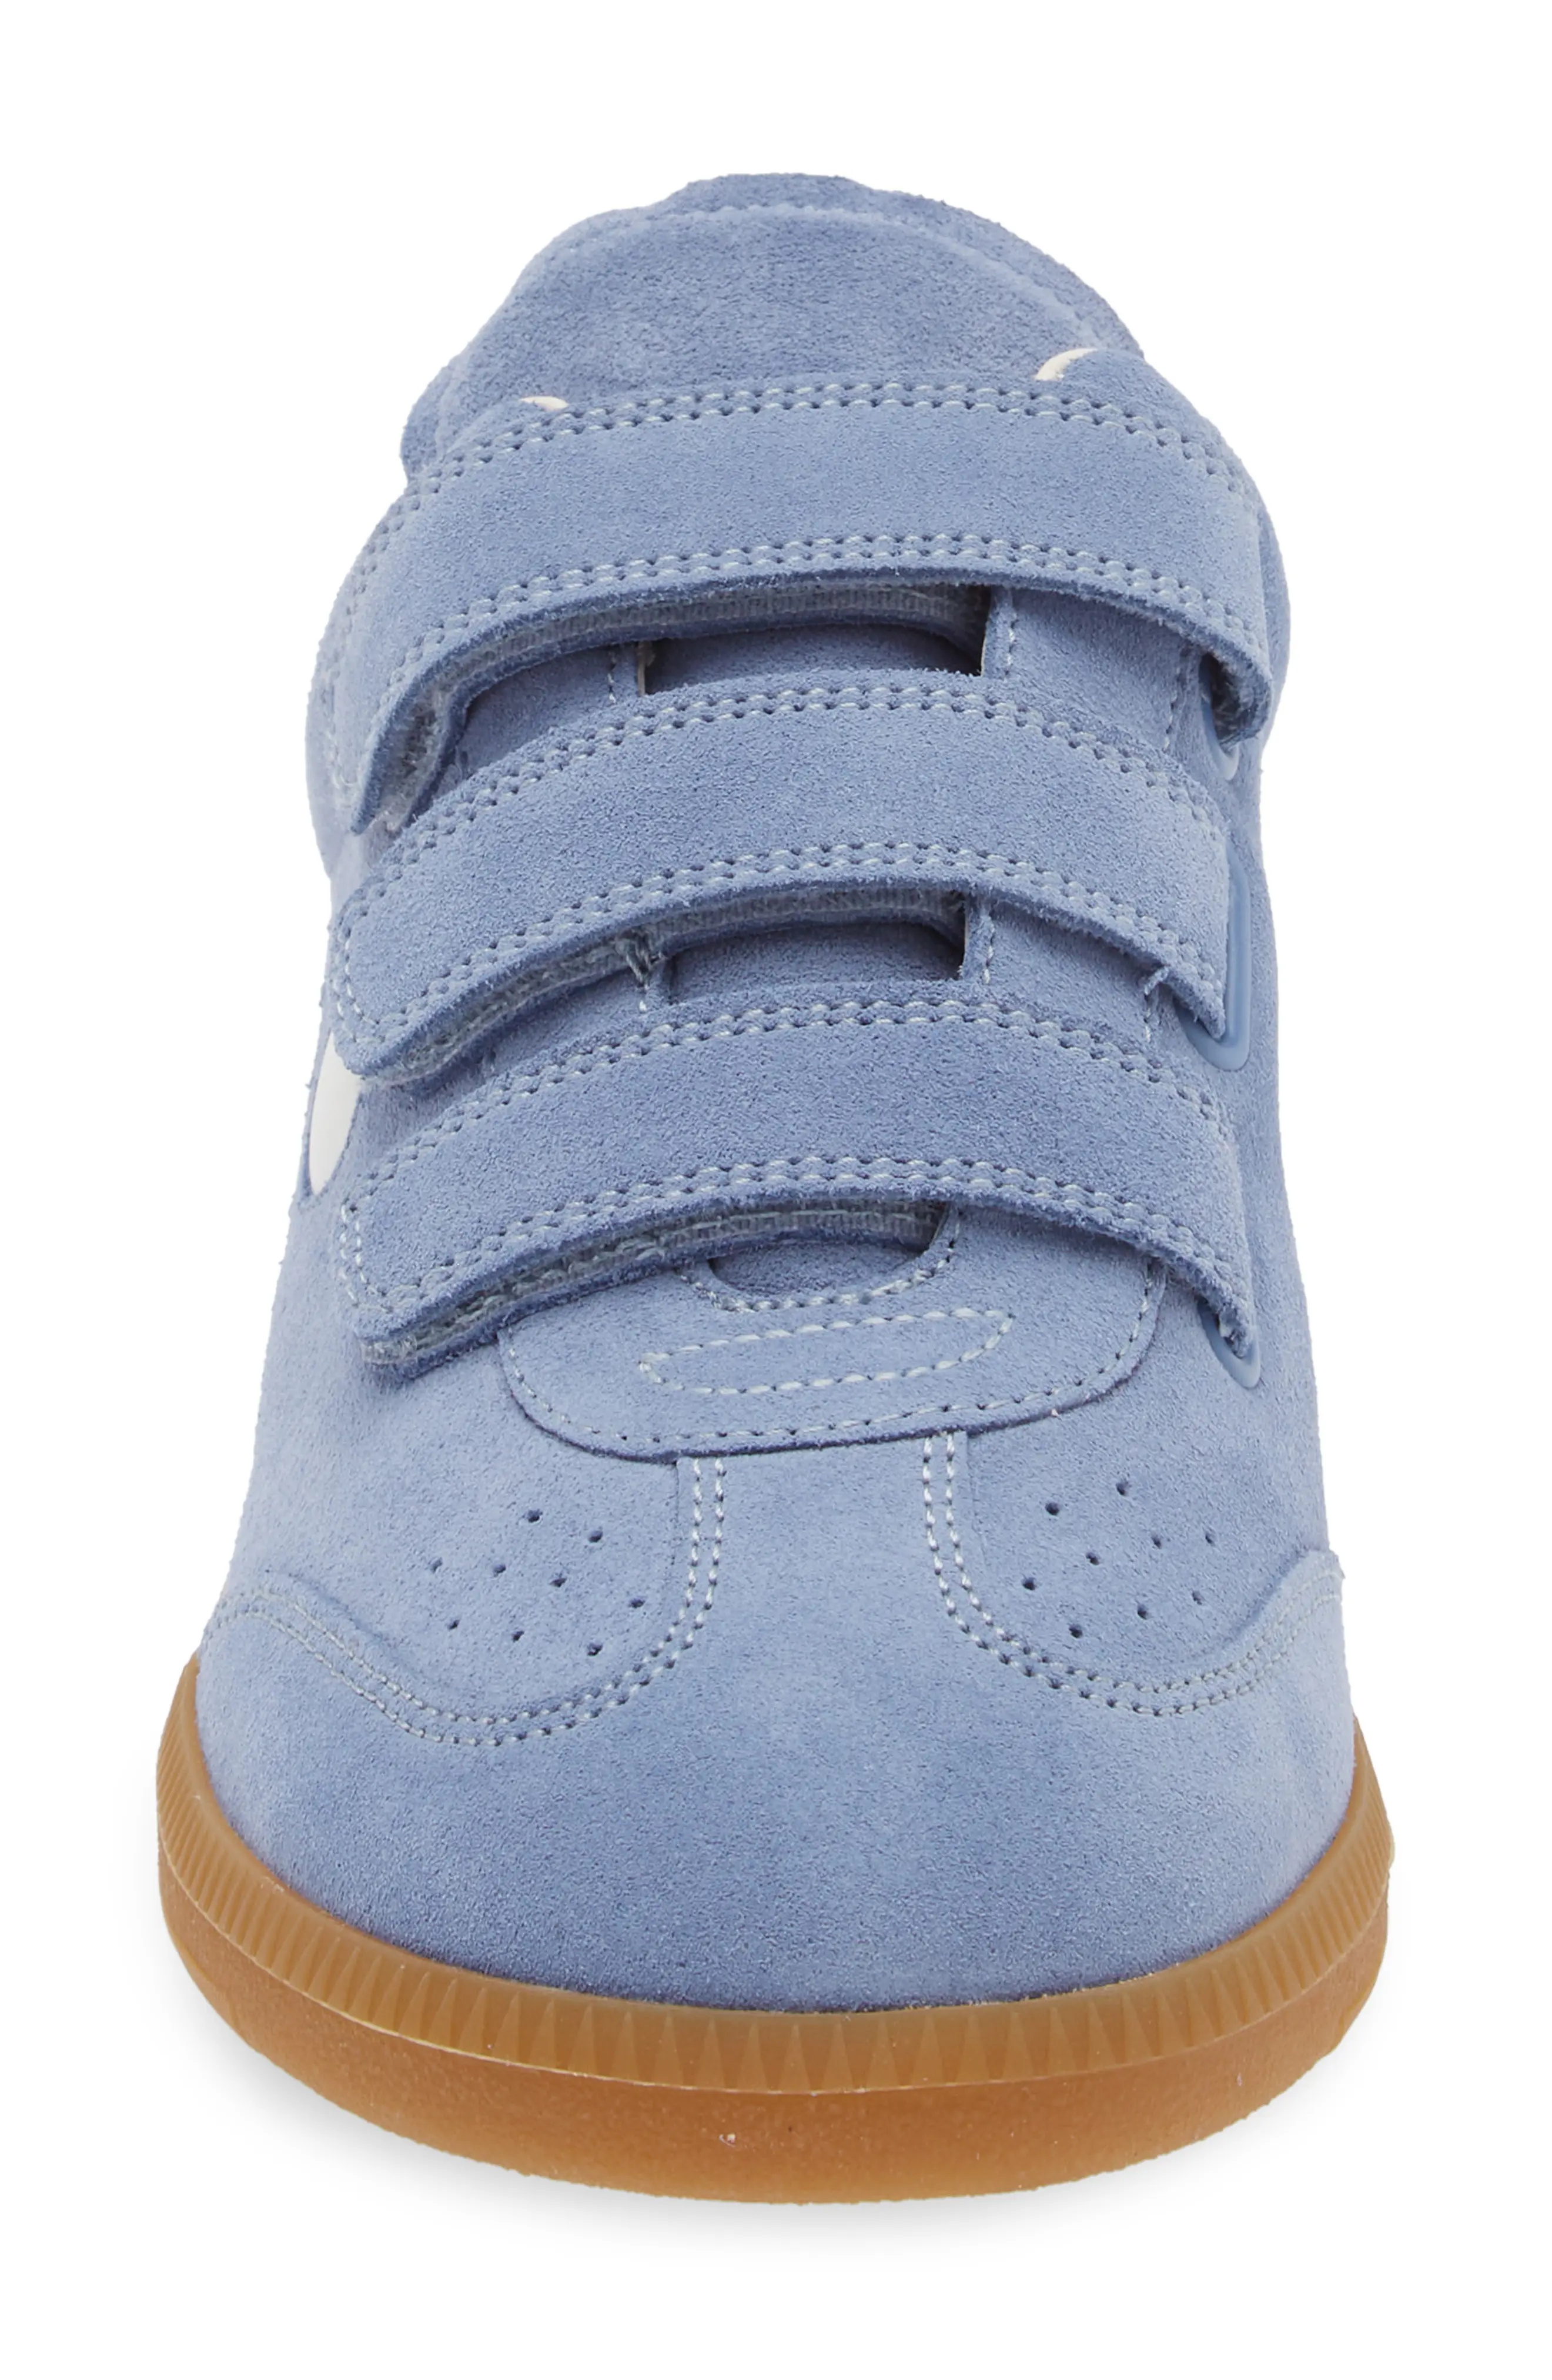 Beth Low Top Sneaker in Blue/White - 4